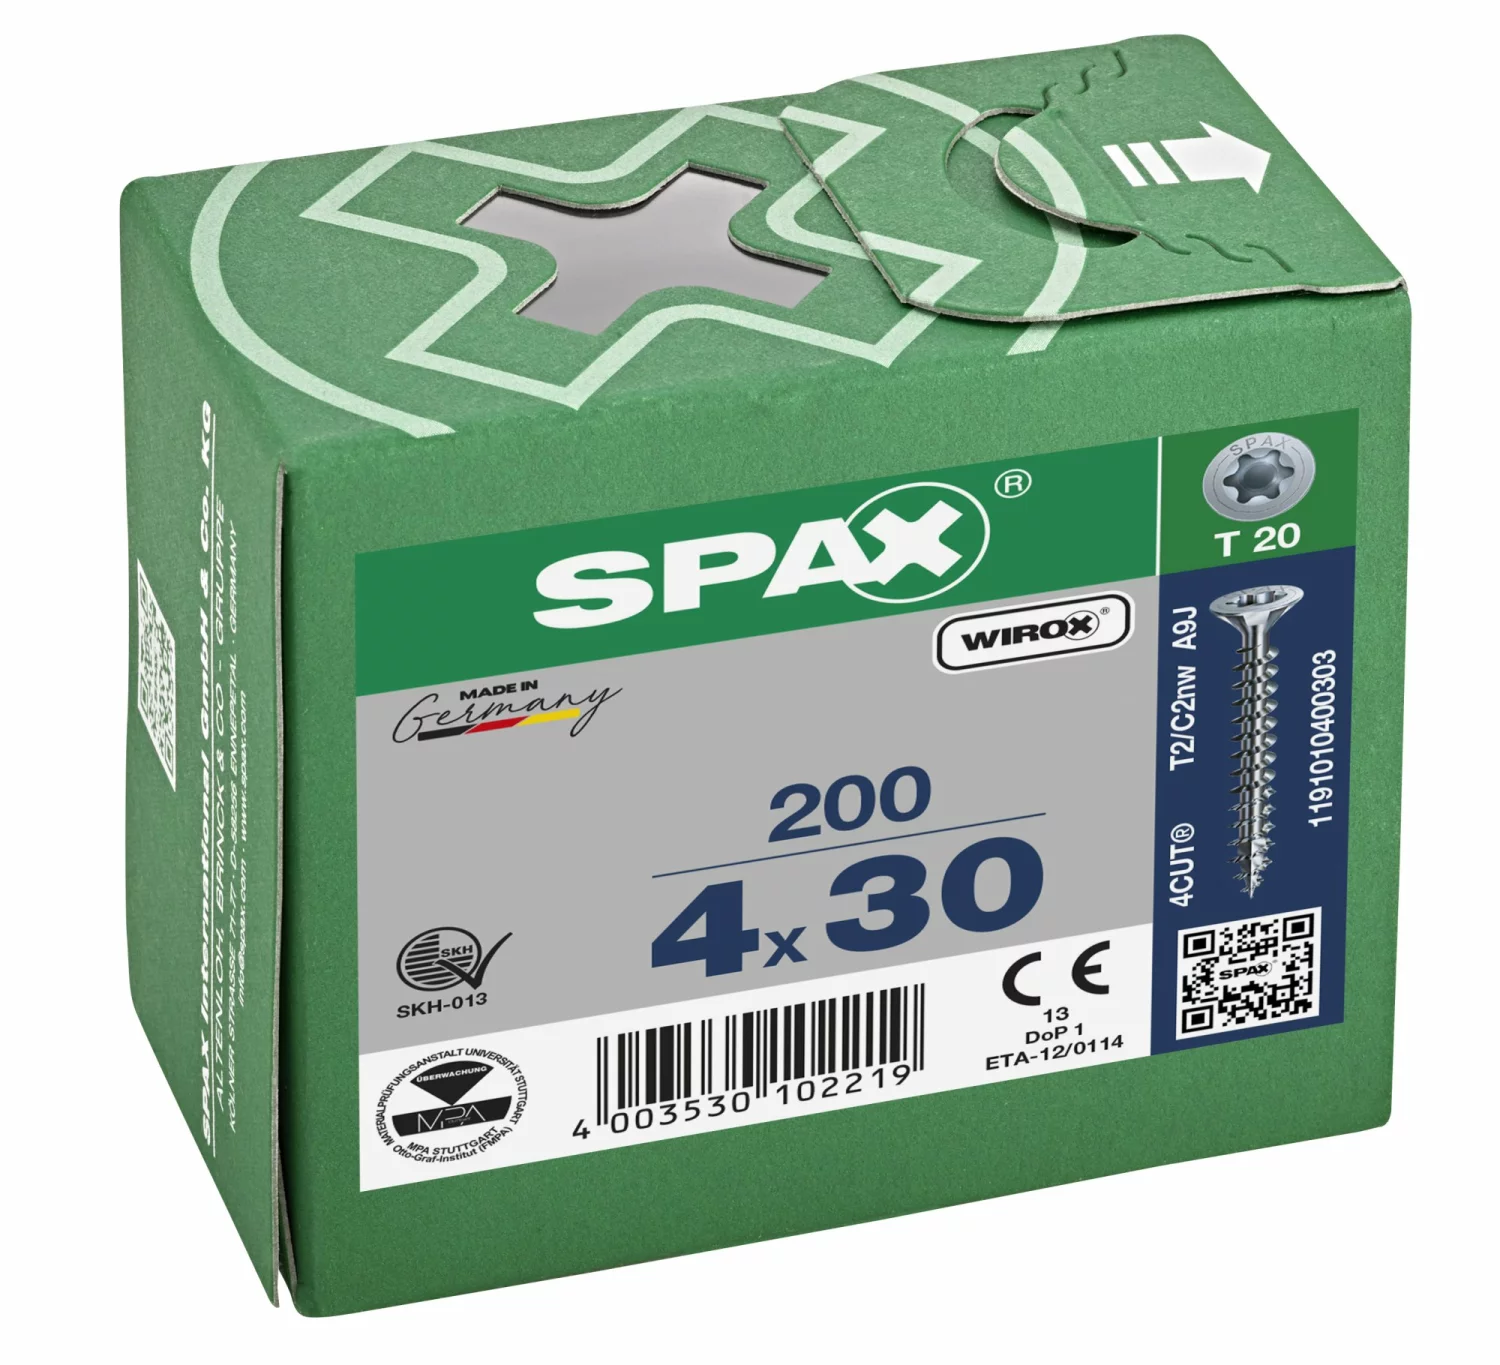 SPAX 1191010400303 Universele schroef, Verzonken kop, 4 x 30, Voldraad, T-STAR plus TX20 - WIROX - 200 stuks-image